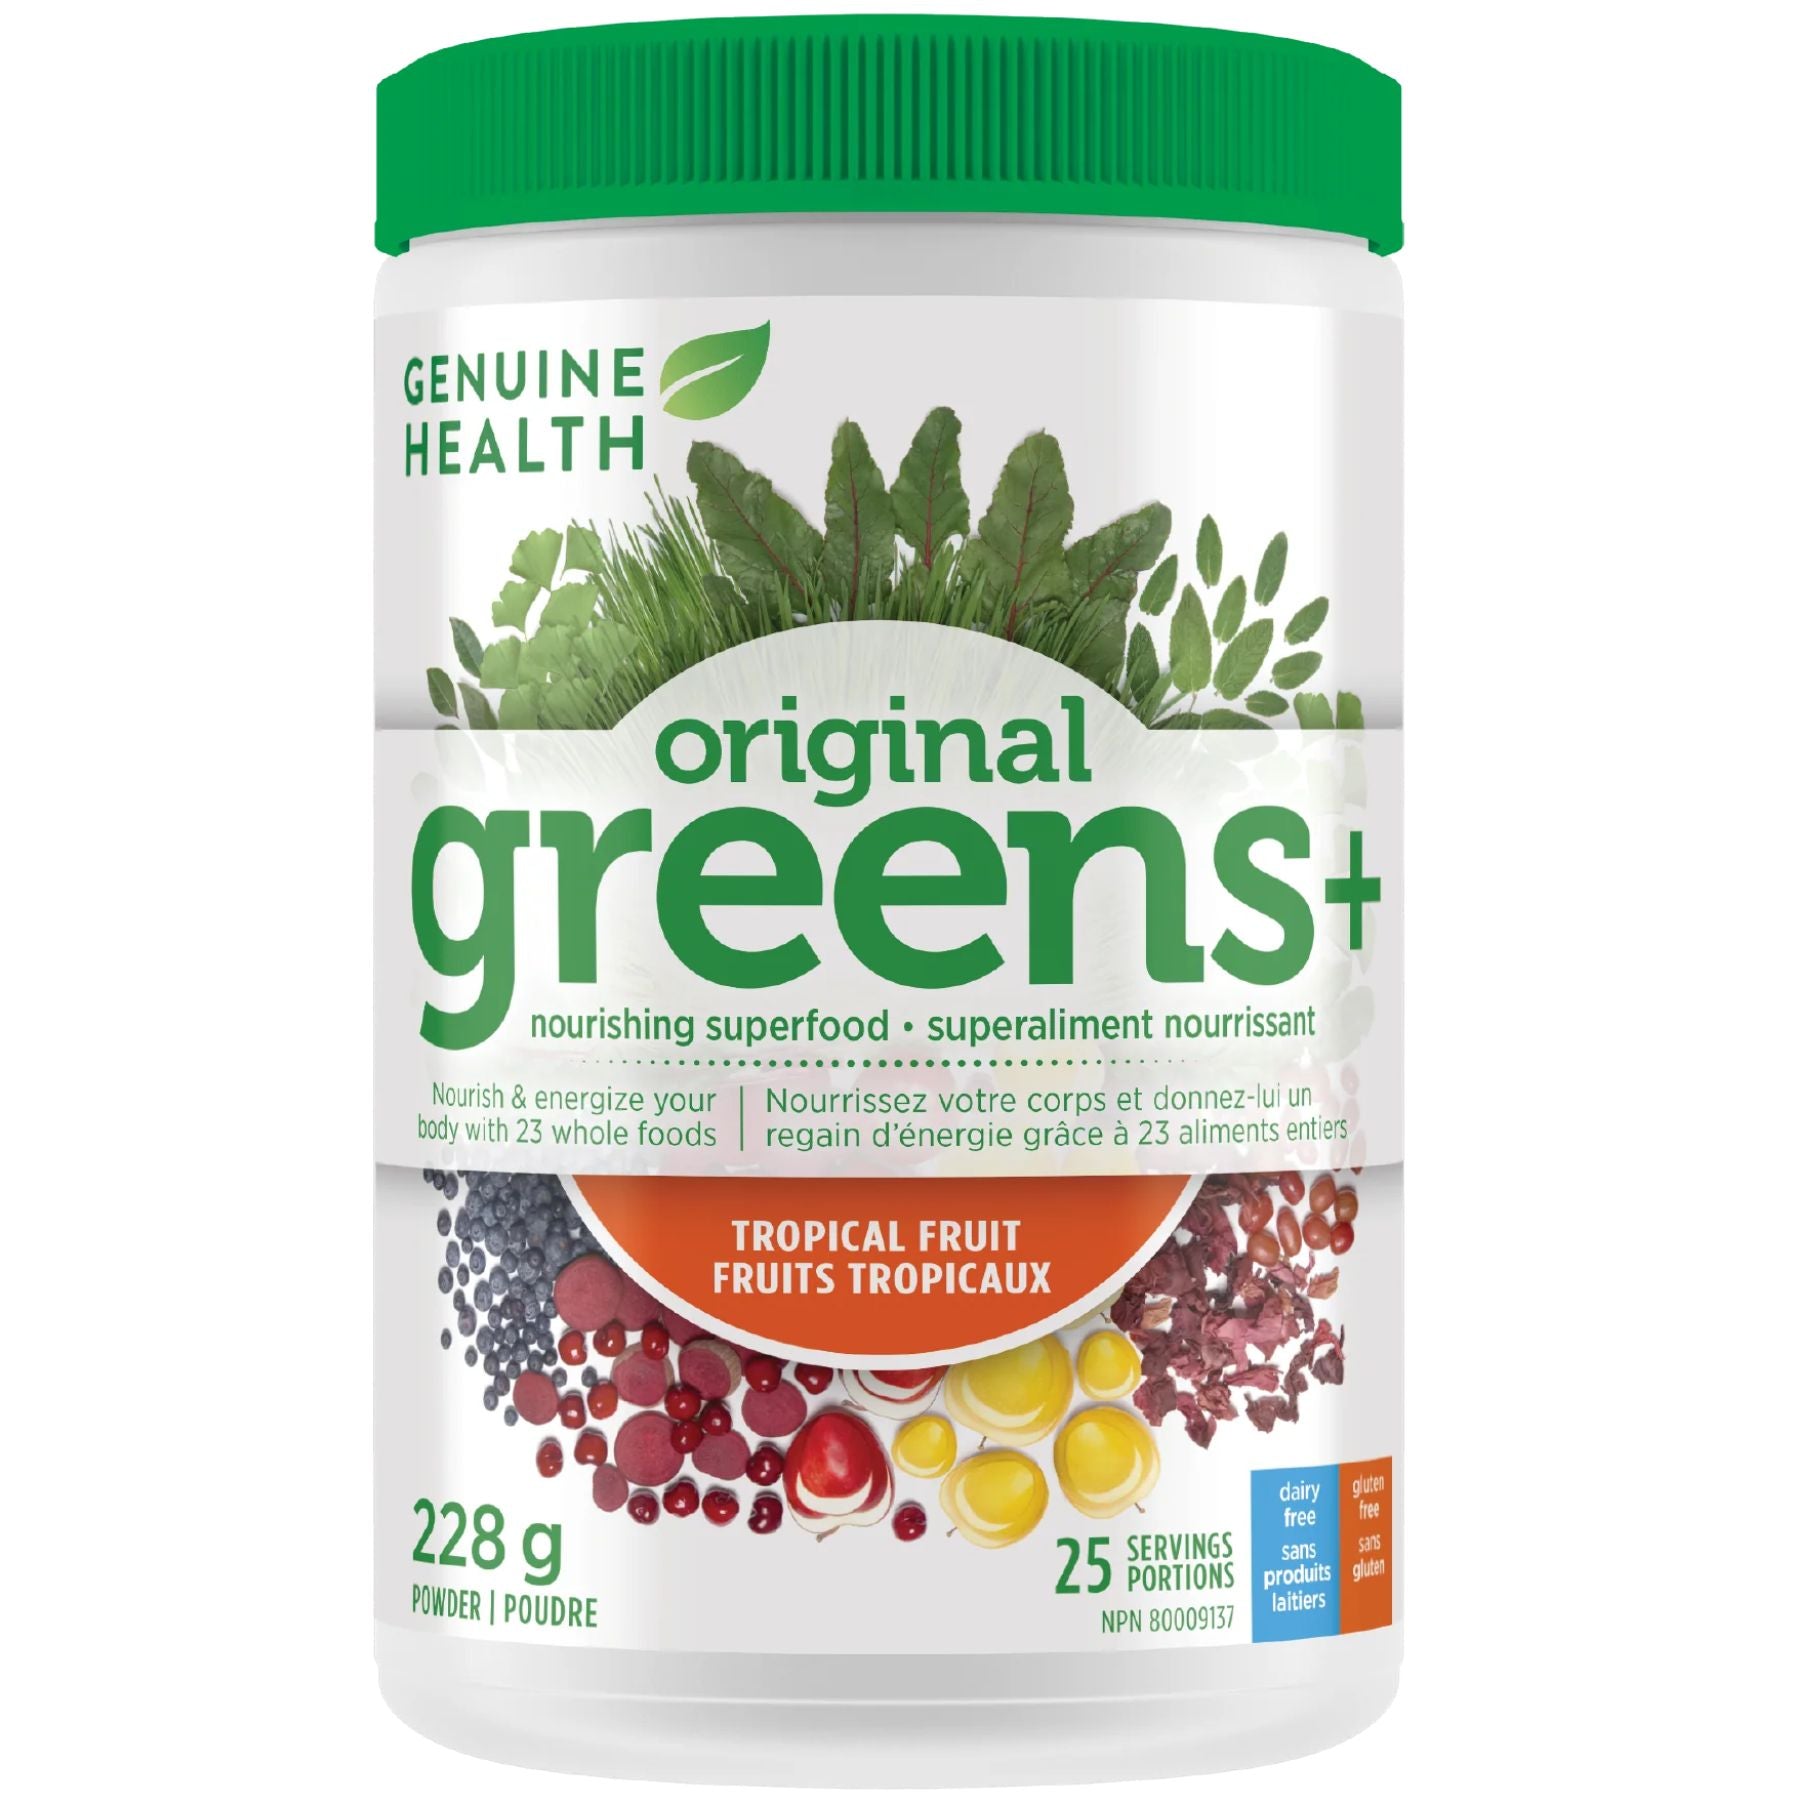 Genuine Health greens+ Tropical Fruit 228g